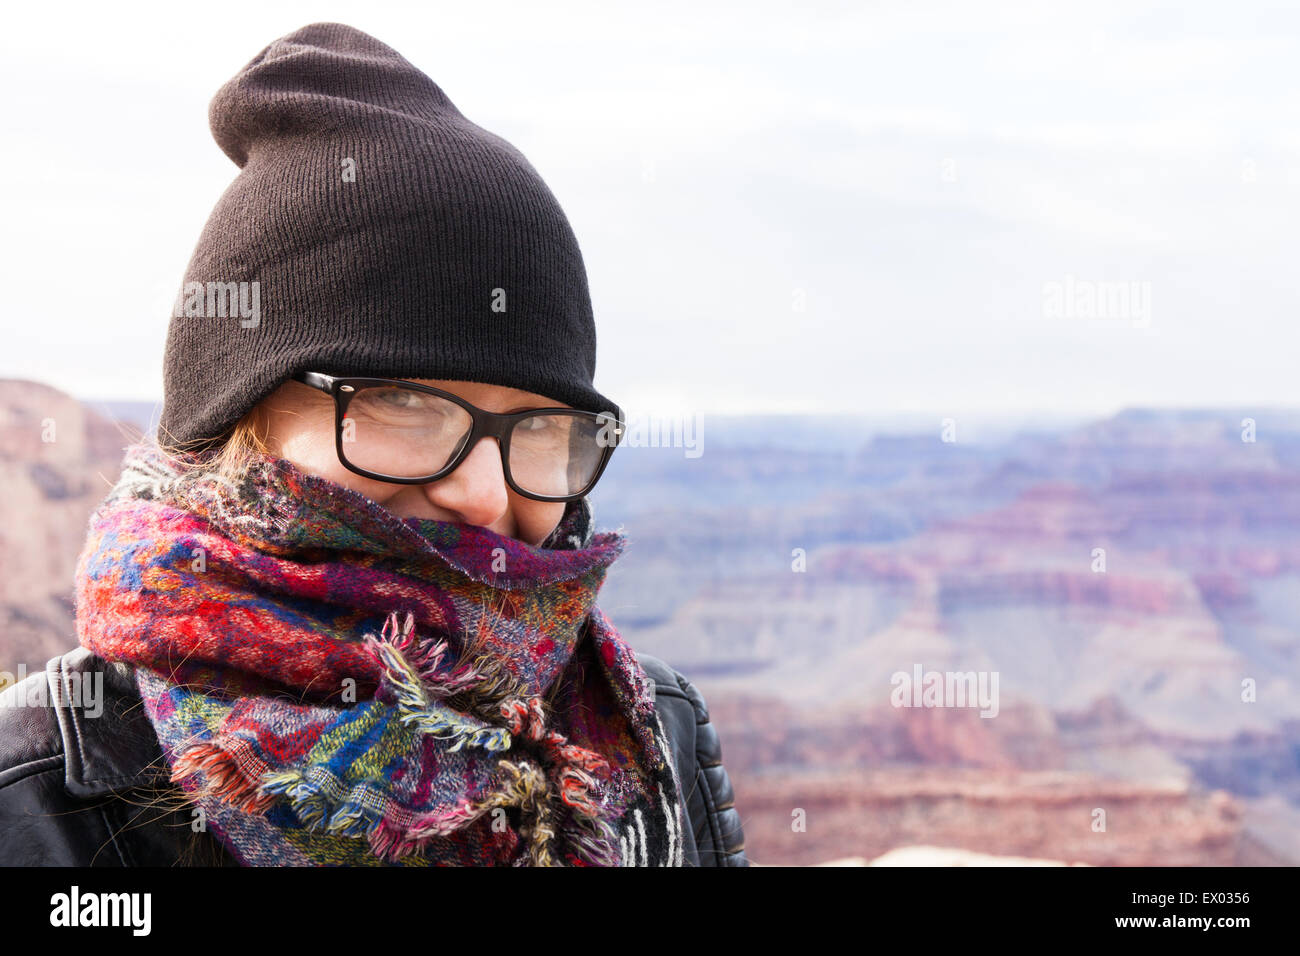 Woman wearing hat and scarf, Grand Canyon, Arizona, USA Stock Photo